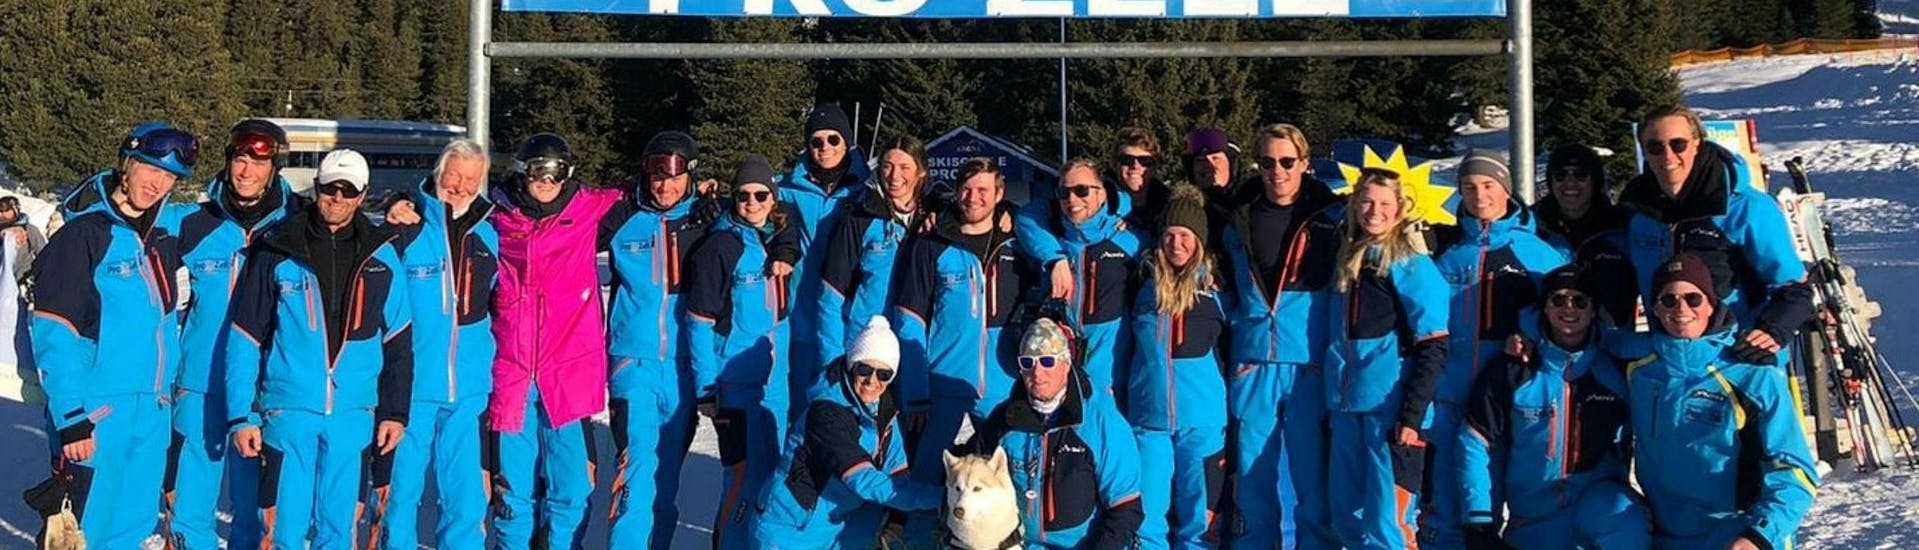 Die Skilehrer der Skischule Pro Zell in Zell am Ziller posieren für ein gemeinsames Gruppenfoto um ihren Skikurs für Erwachsene - Anfänger zu bewerben.